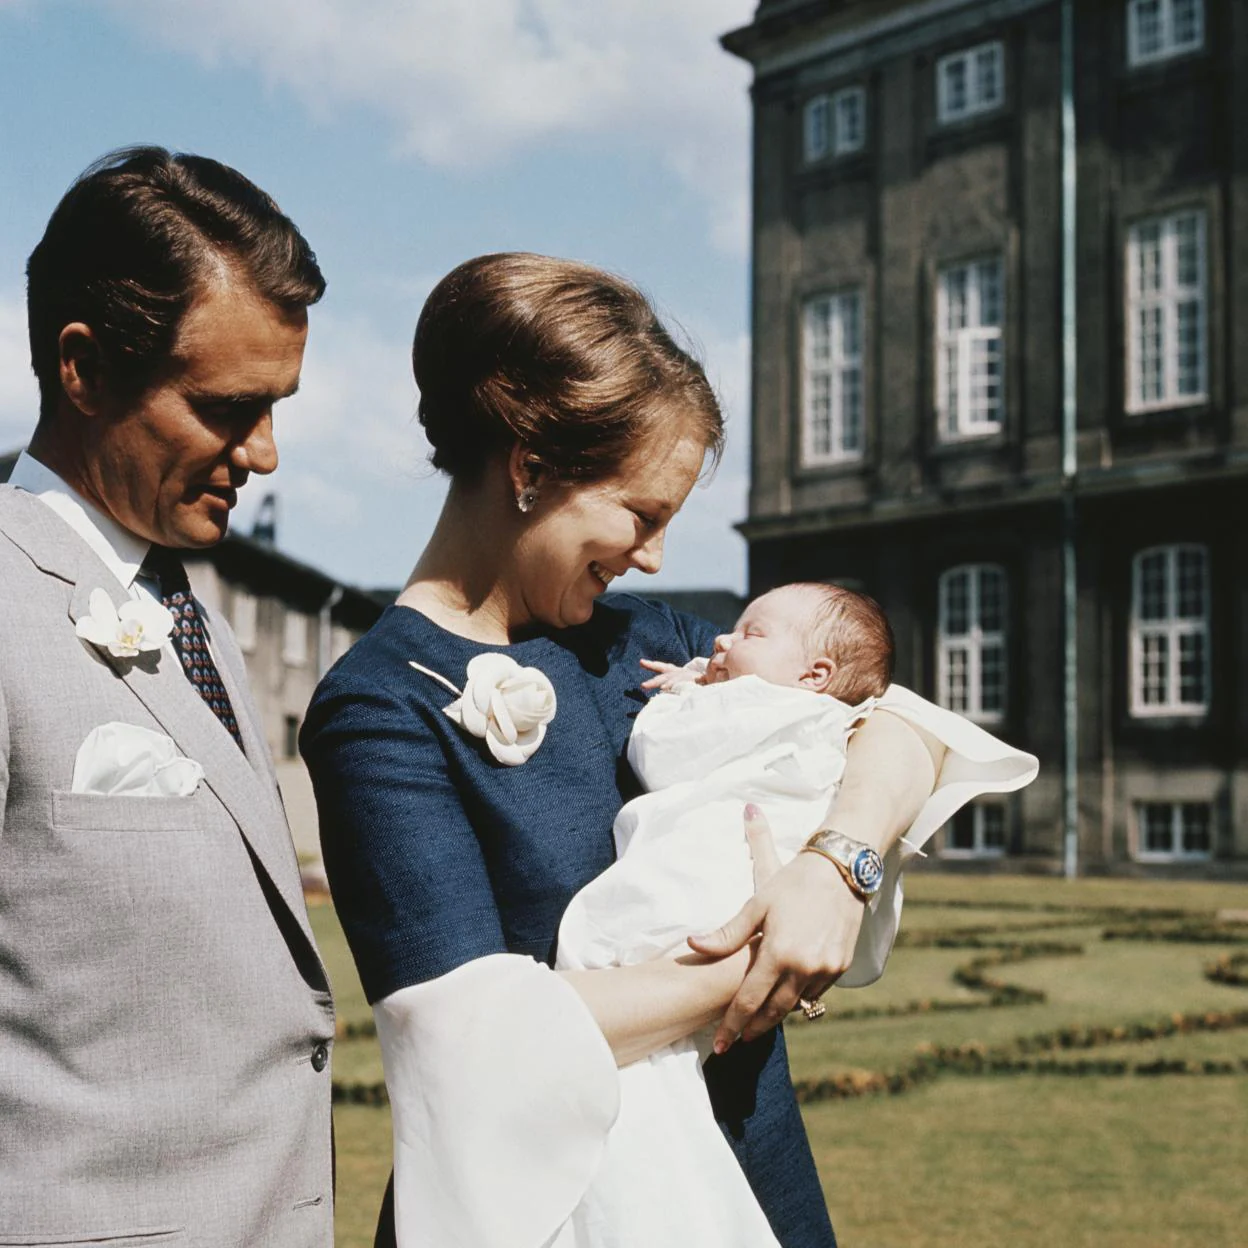 Margarita de Dinamarca con Federico en brazos cuando era un bebé./getty images